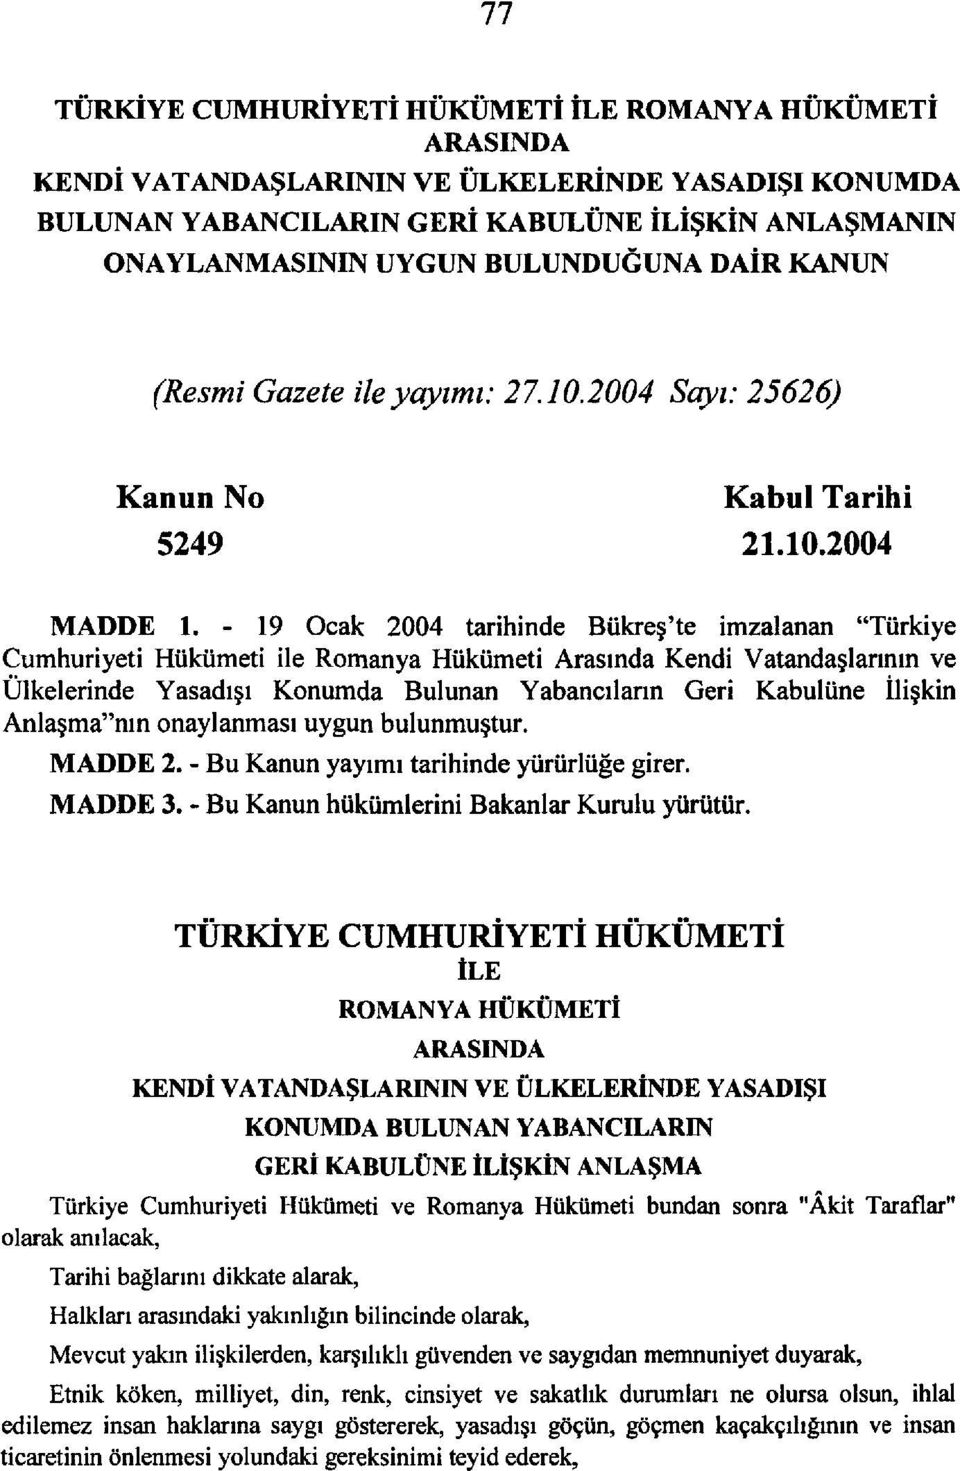 - 19 Ocak 2004 tarihinde Bükreş'te imzalanan "Türkiye Cumhuriyeti Hükümeti ile Romanya Hükümeti Arasında Kendi Vatandaşlarının ve Ülkelerinde Yasadışı Konumda Bulunan Yabancıların Geri Kabulüne